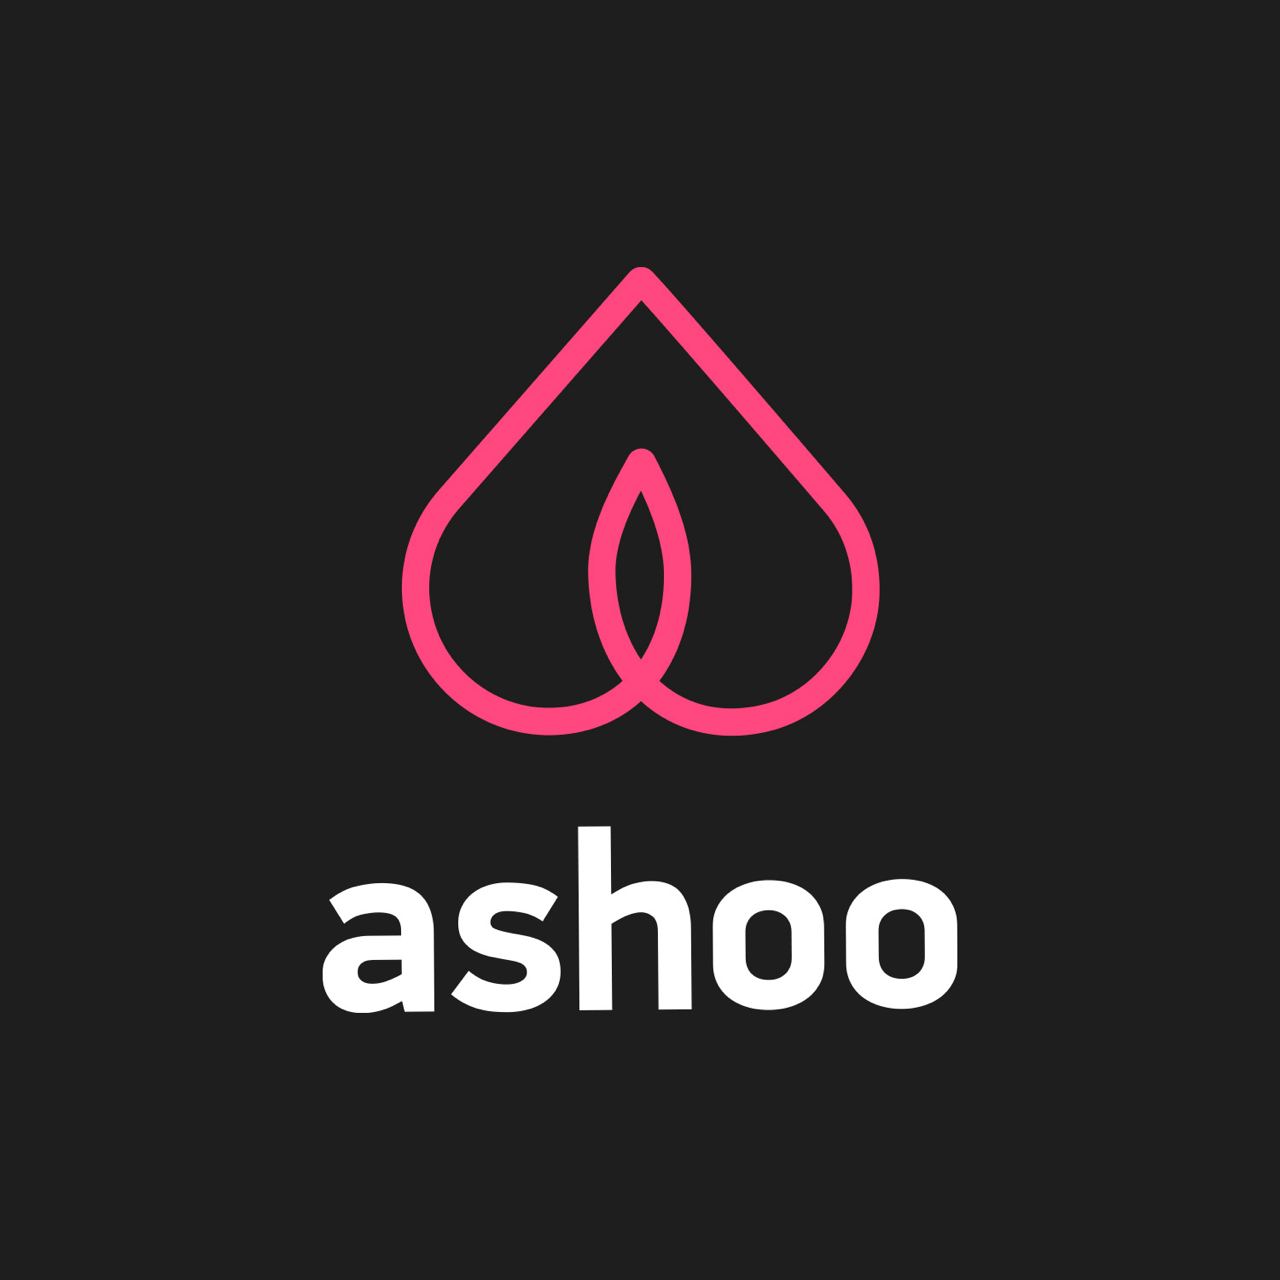 Re ashoo org